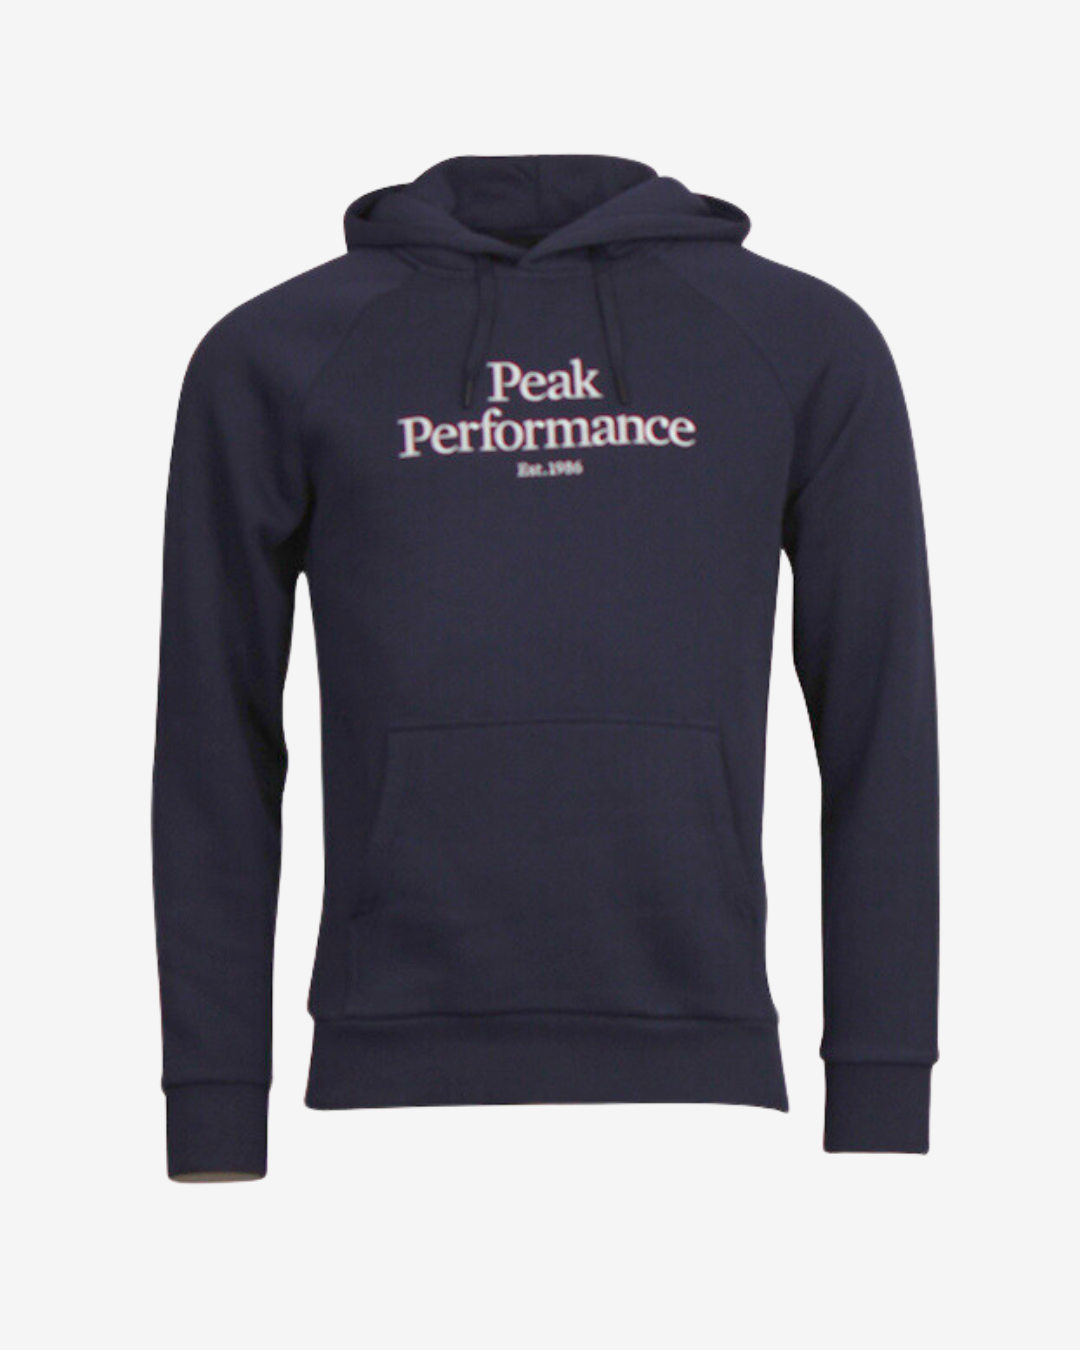 Billede af Peak Performance Original logo hættetrøje - Navy - Str. XXL - Modish.dk